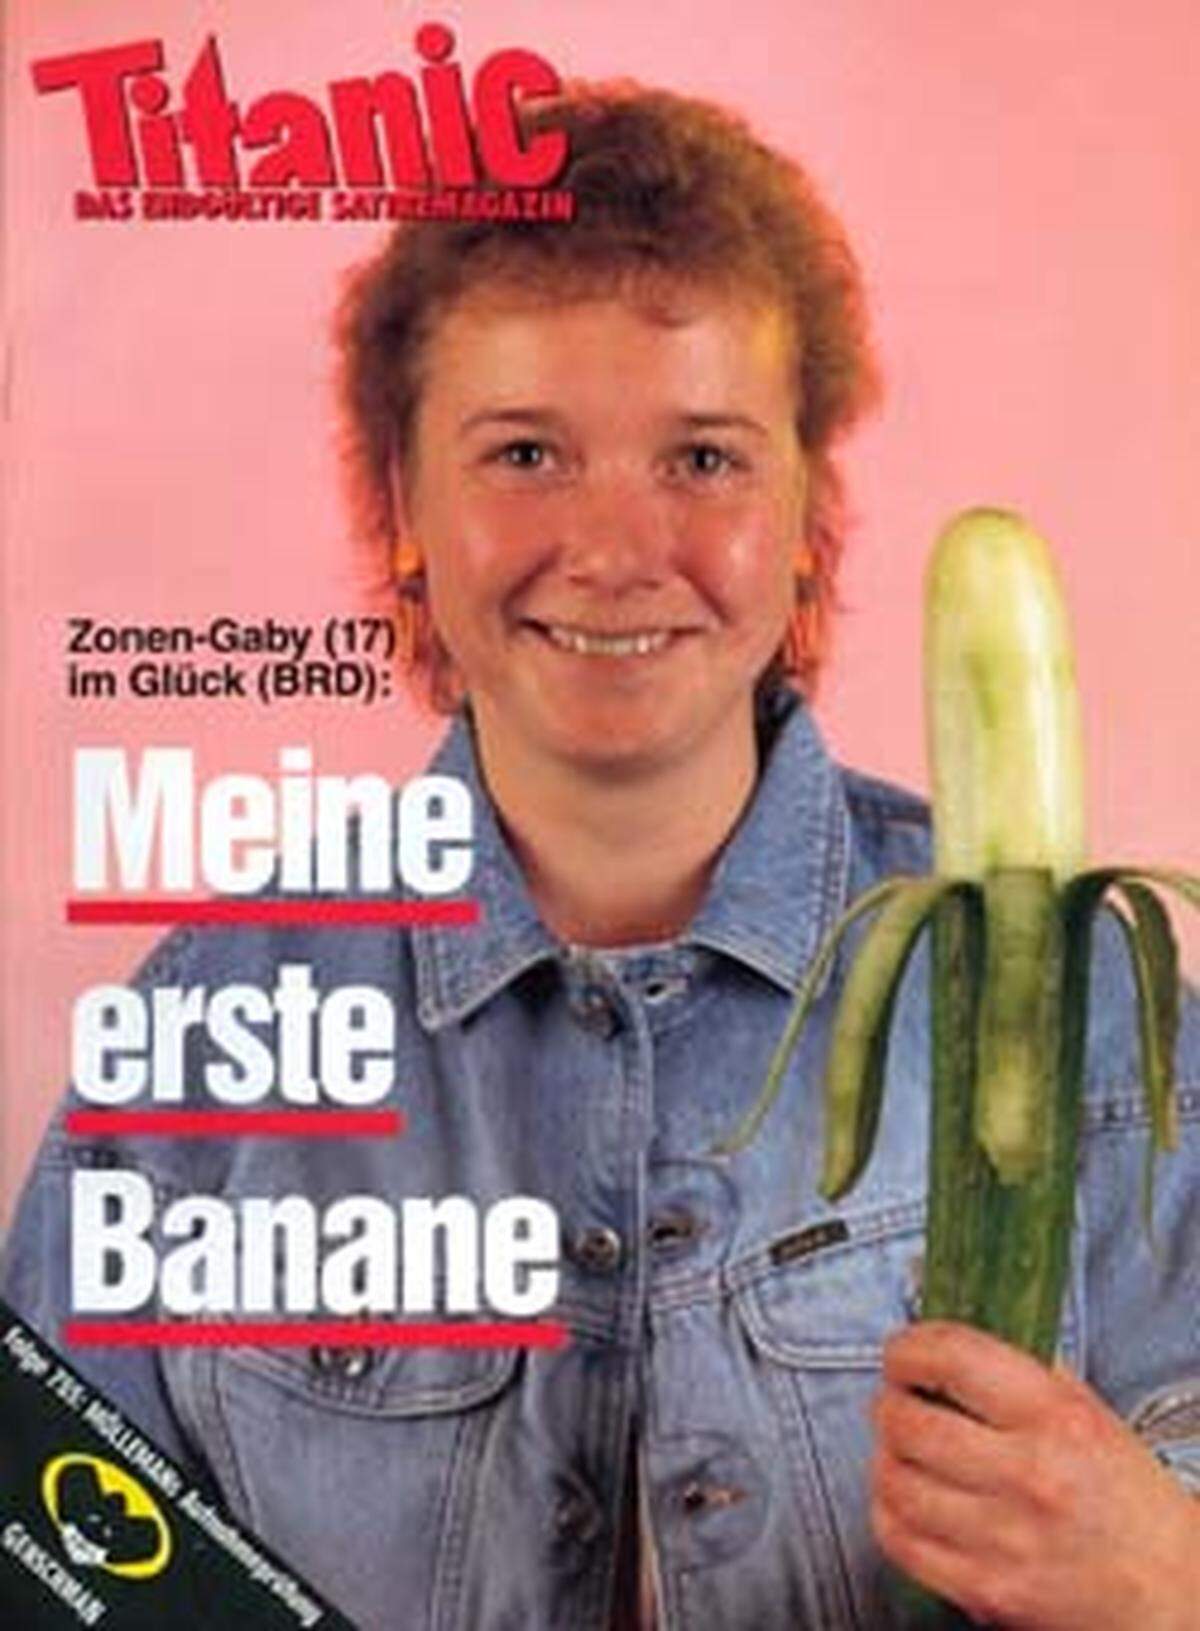 Lgenedäres Cover nach dem Mauerfall: Die "Zonen-Gaby" ist "im Glück (BRD)" und hält "Meine erste Banane". Und ja, das ist eine geschickt geschälte Gurke.